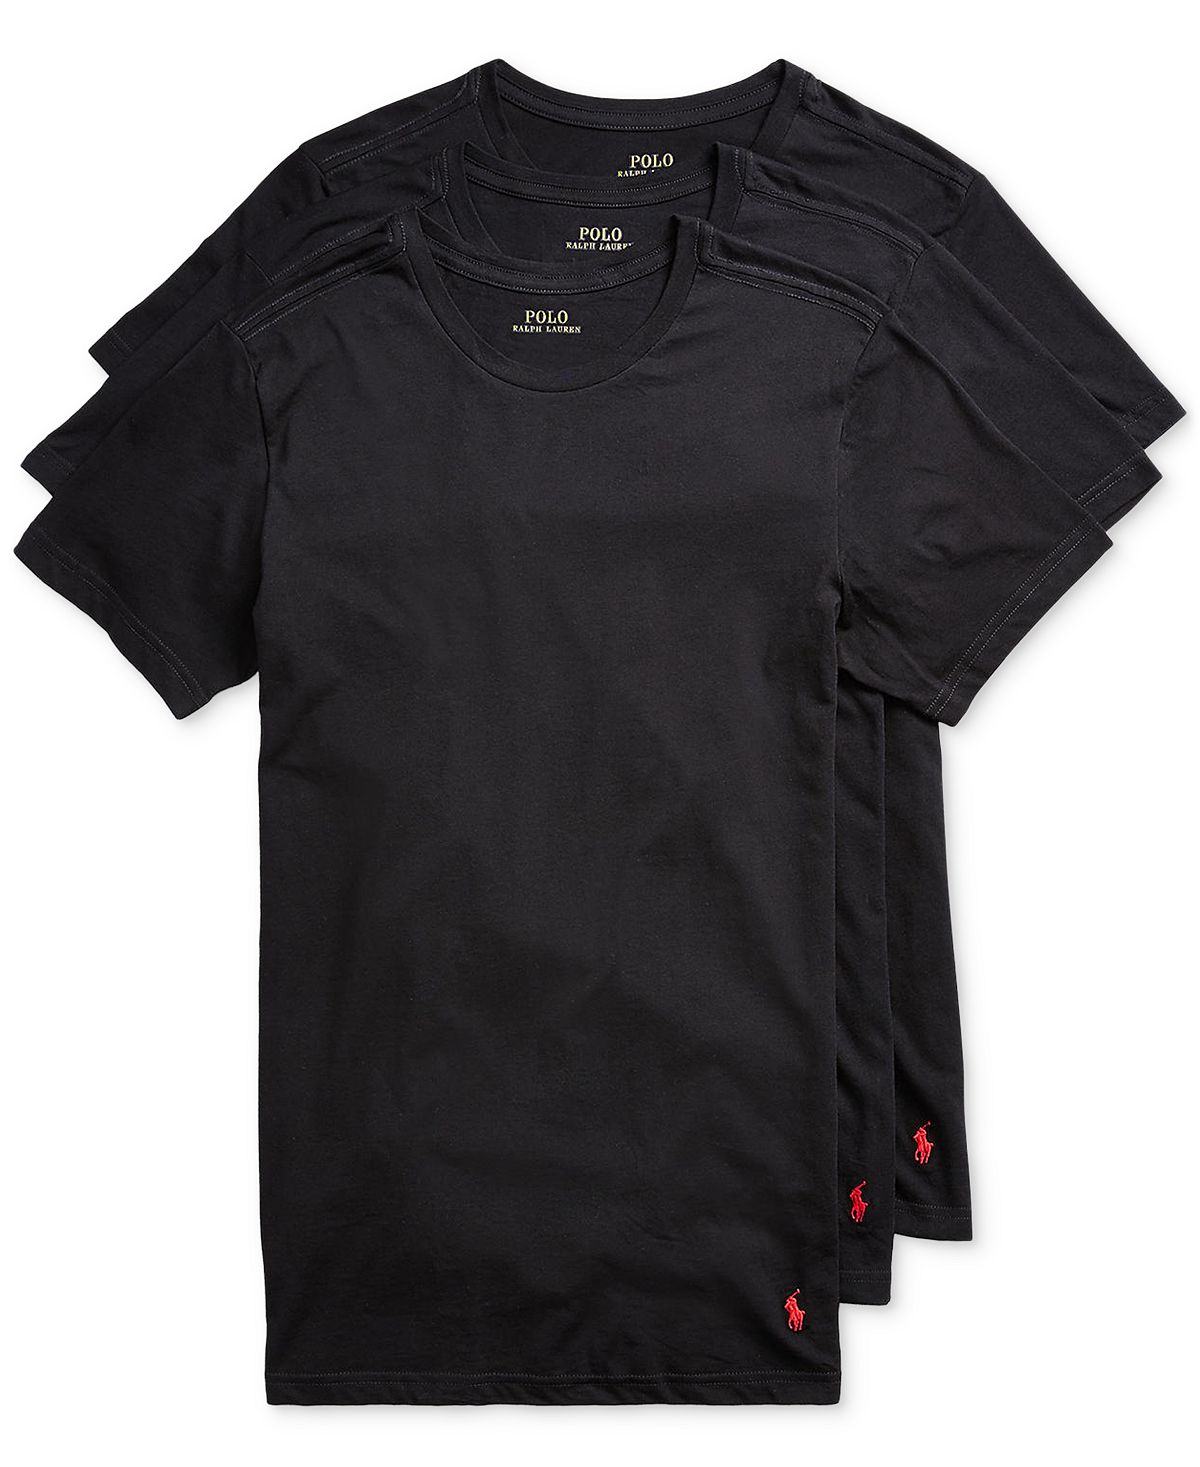 Мужская рубашка приталенного кроя с круглым вырезом, комплект из 3 шт. Polo Ralph Lauren поло polo ralph lauren custom slim fit mesh polo цвет ralph lauren 2000 red